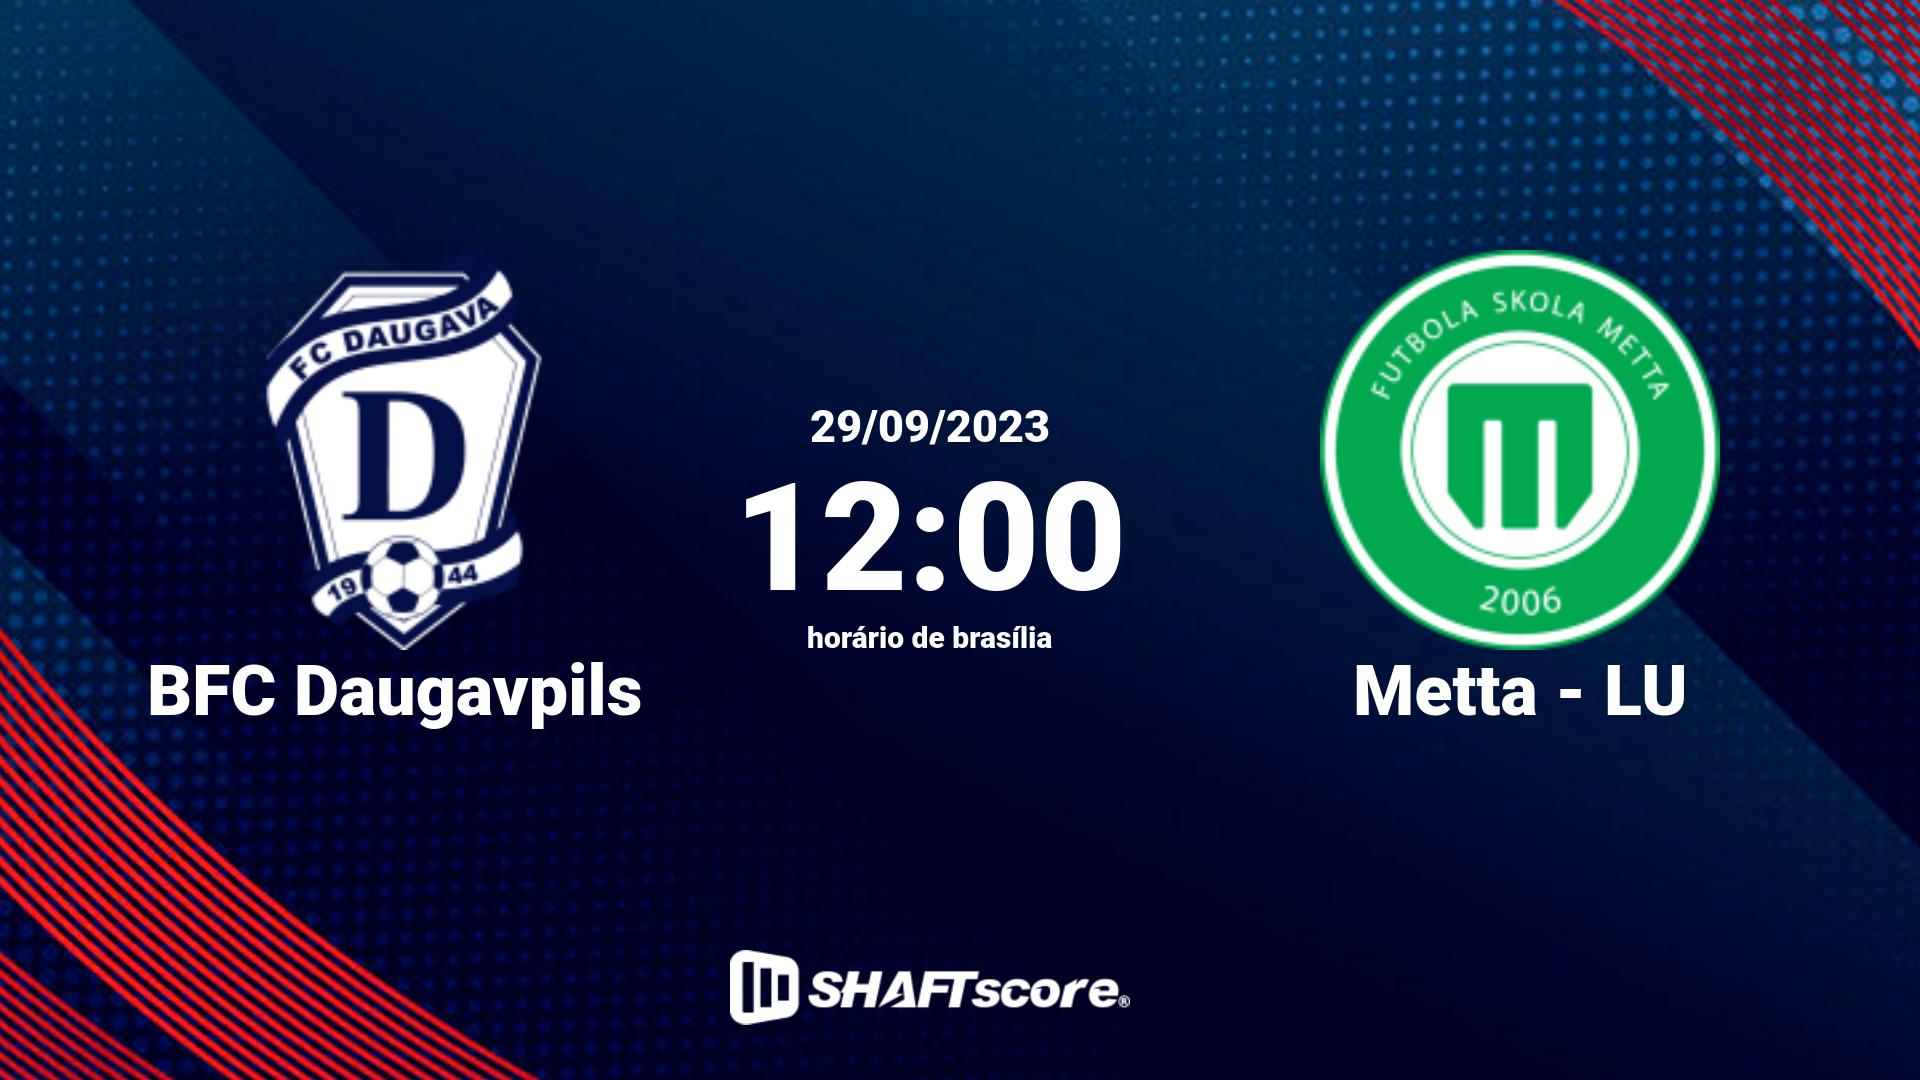 Estatísticas do jogo BFC Daugavpils vs Metta - LU 29.09 12:00